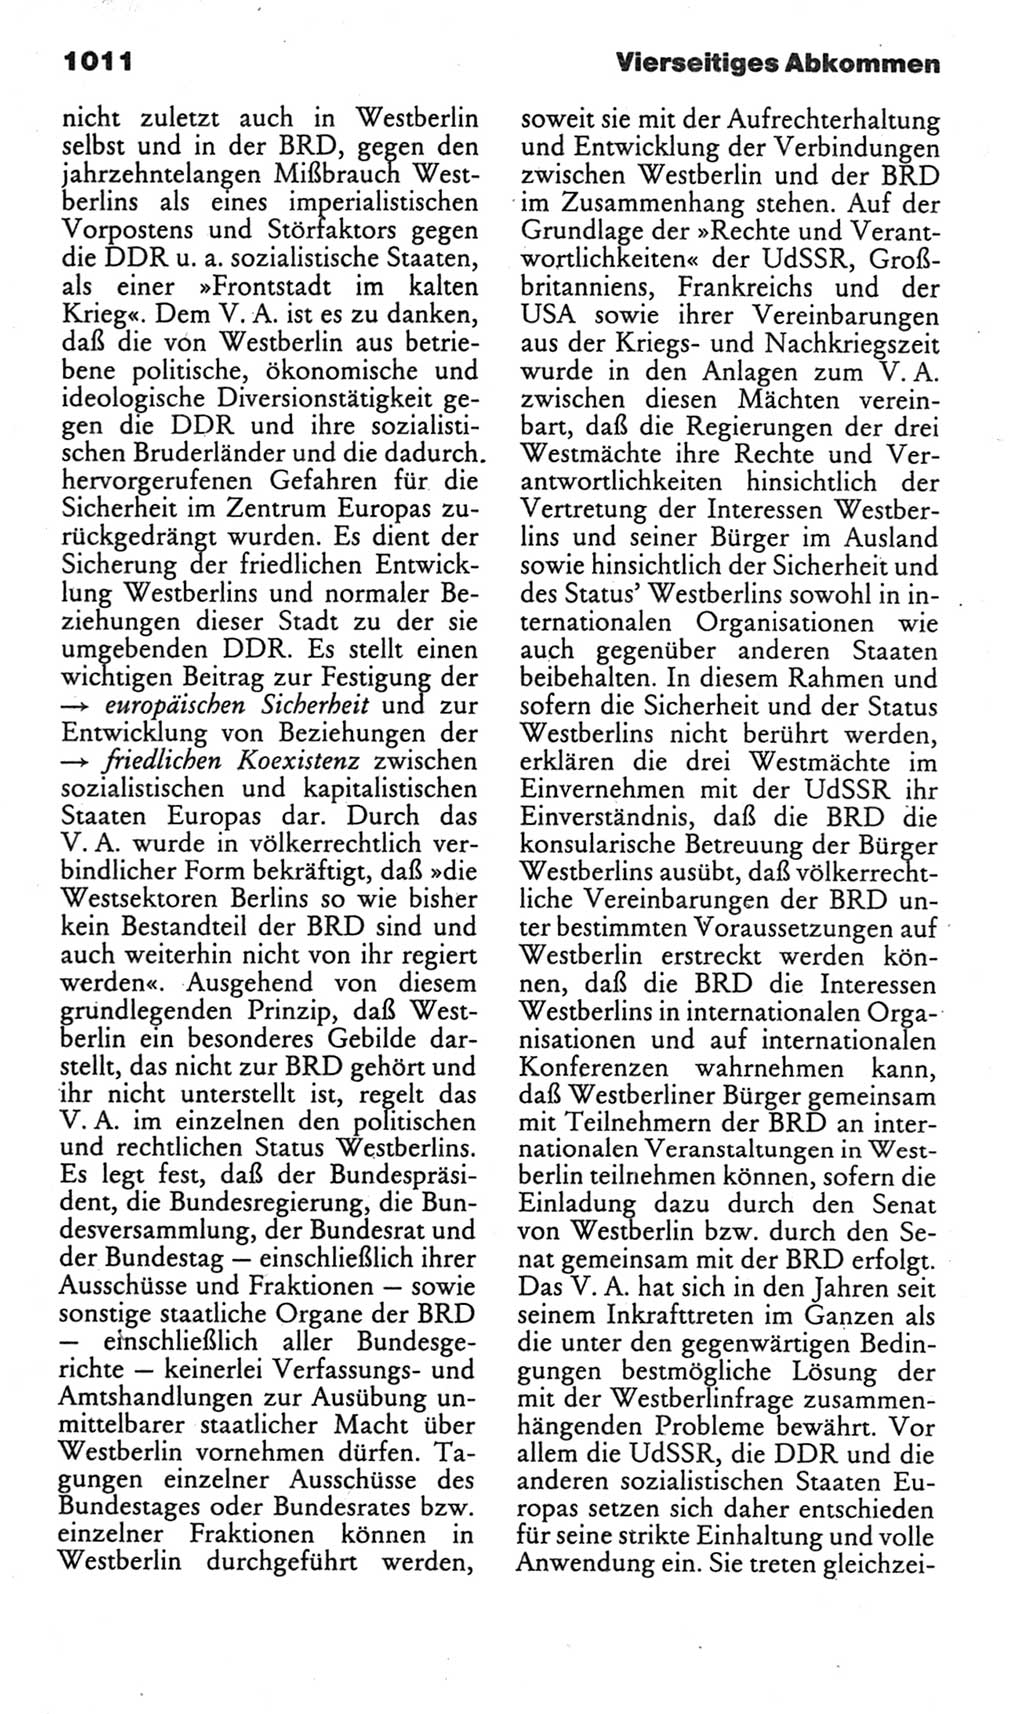 Kleines politisches Wörterbuch [Deutsche Demokratische Republik (DDR)] 1985, Seite 1011 (Kl. pol. Wb. DDR 1985, S. 1011)